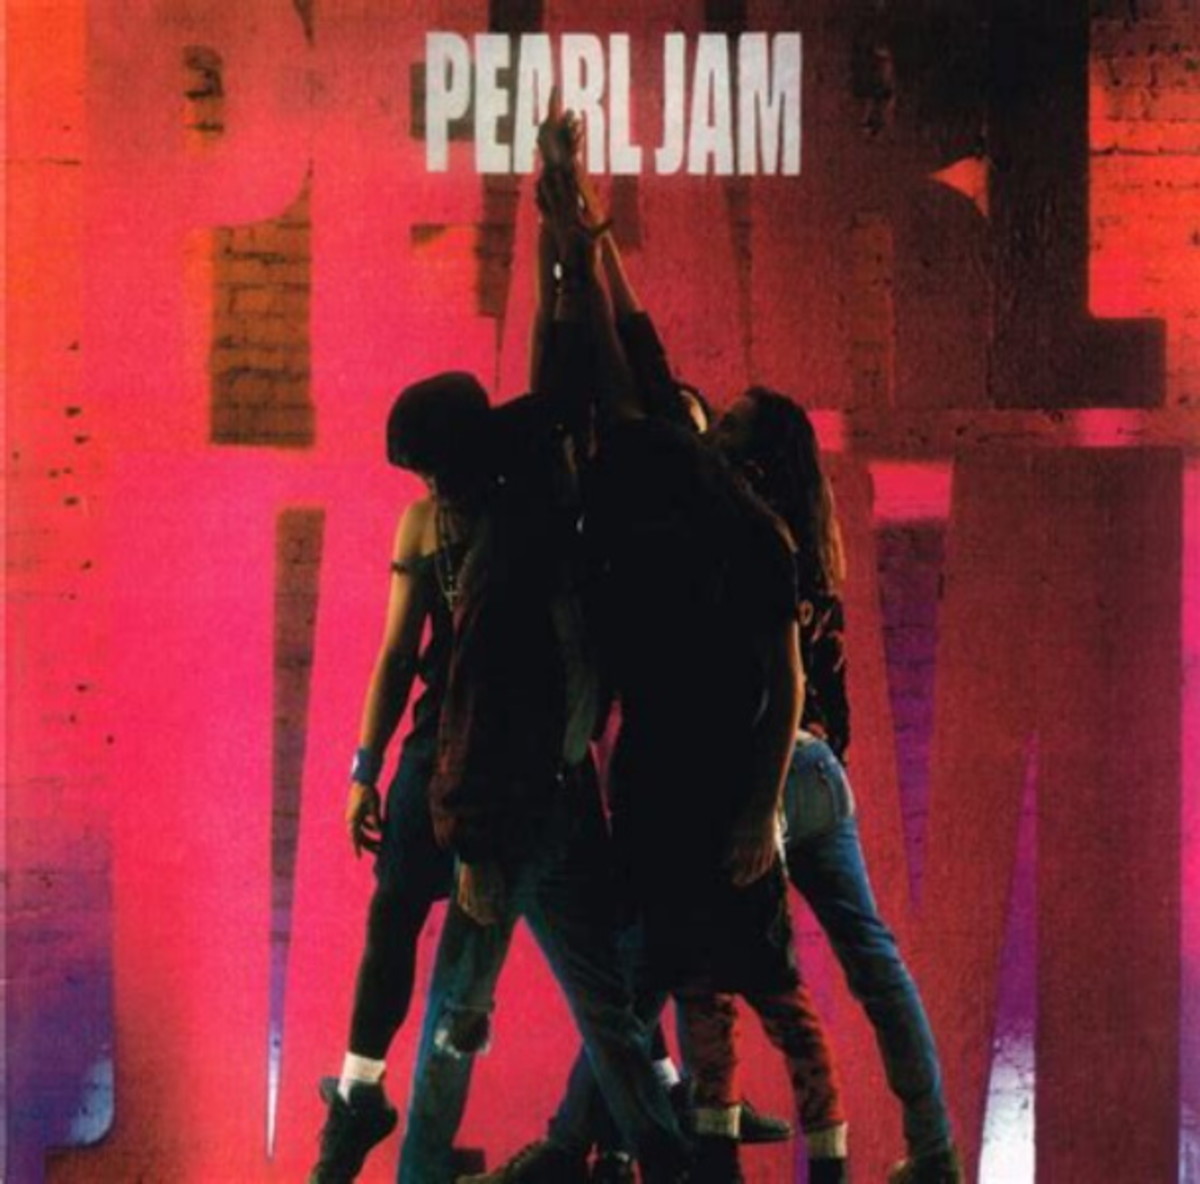 "Ten" by Pearl Jam